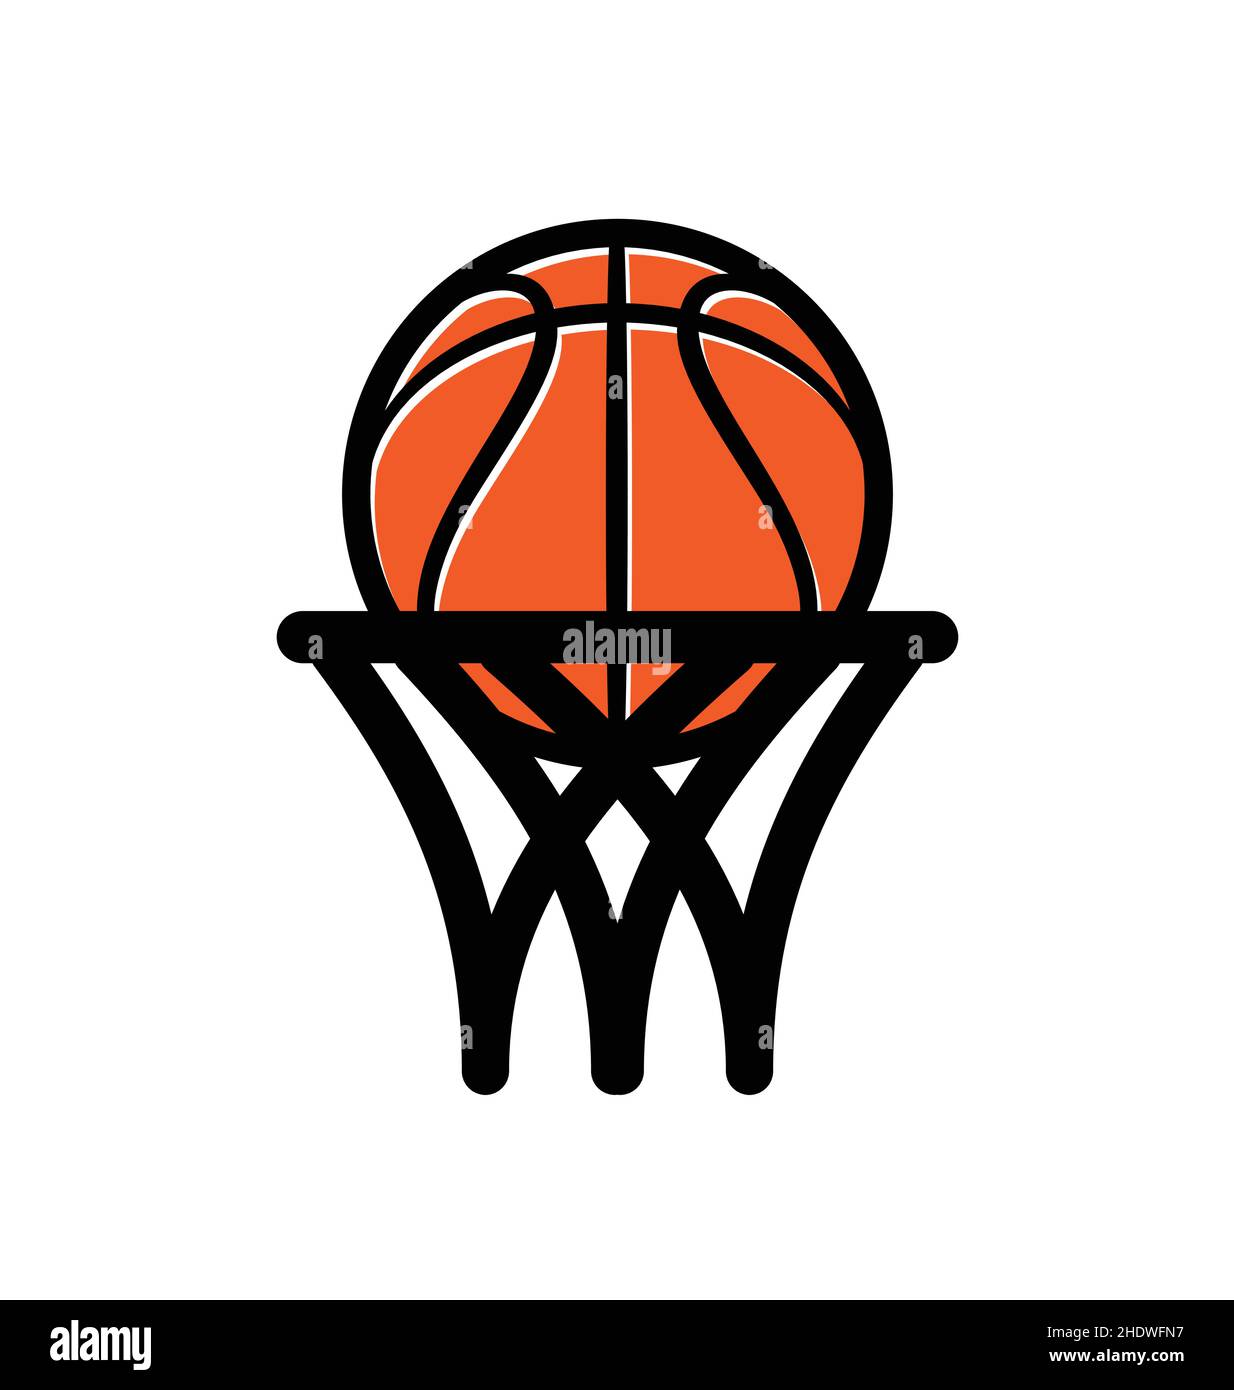 logo de basket-ball simple ligne dessin abstrait cerceau moyen vecteur isolé sur fond blanc Illustration de Vecteur